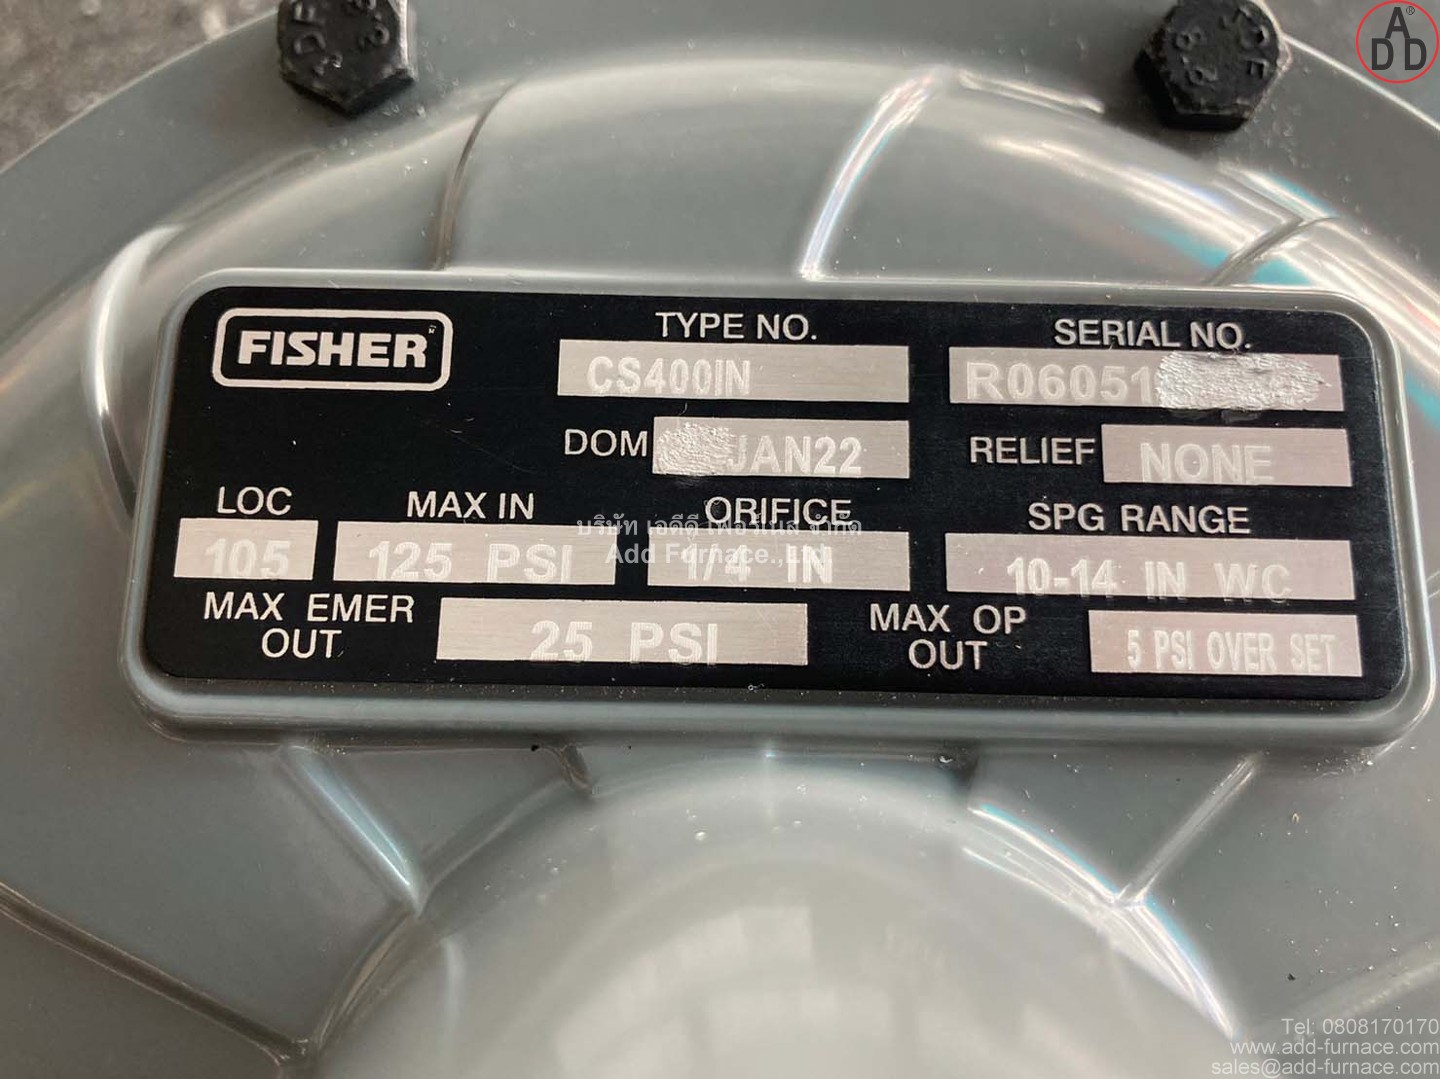 Fisher Type.No CS400IN Range 10-14 In. w.c. (14)